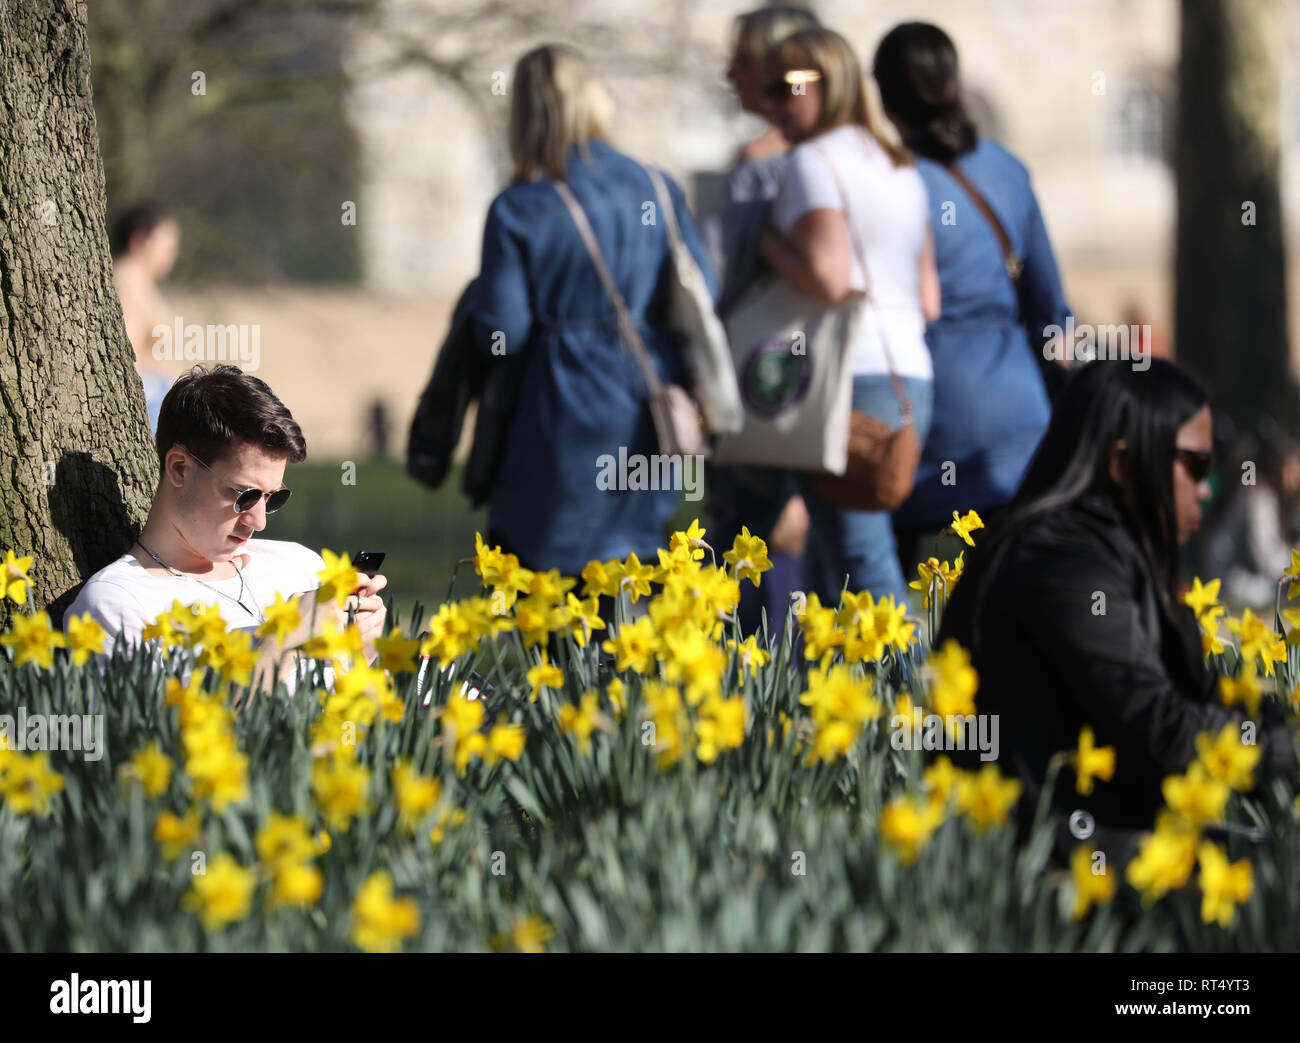 Heißes Wetter Februar 2019 Narzissen in der St James' Park als Menschen genießen die Sonne Bild von Gavin Rodgers/Pixel 8000 27.2.19 Stockfoto